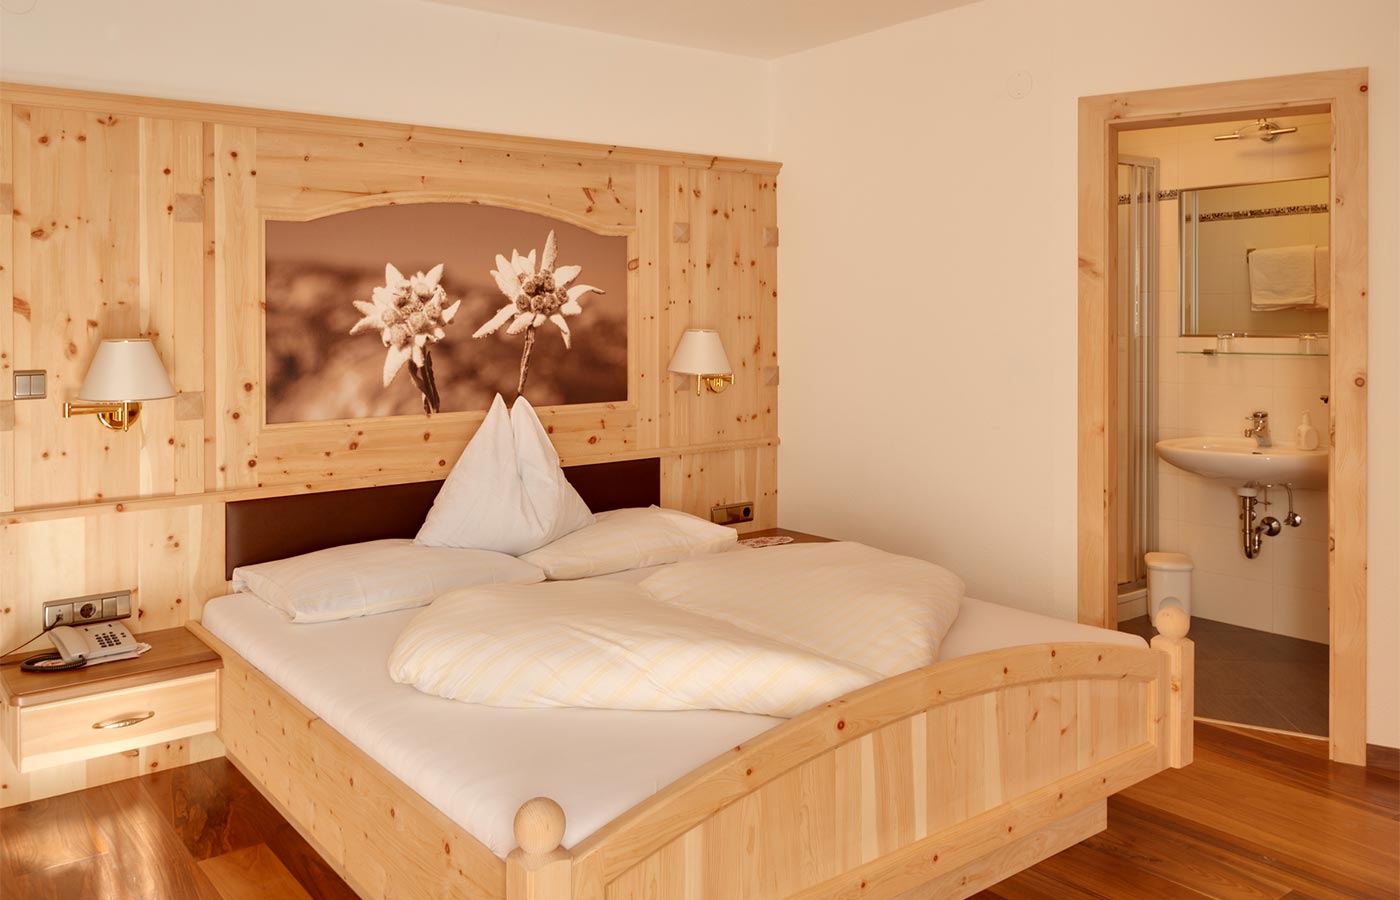 Doppelzimmer im Hotel Alpenhof in hellem Holz eingerichtet